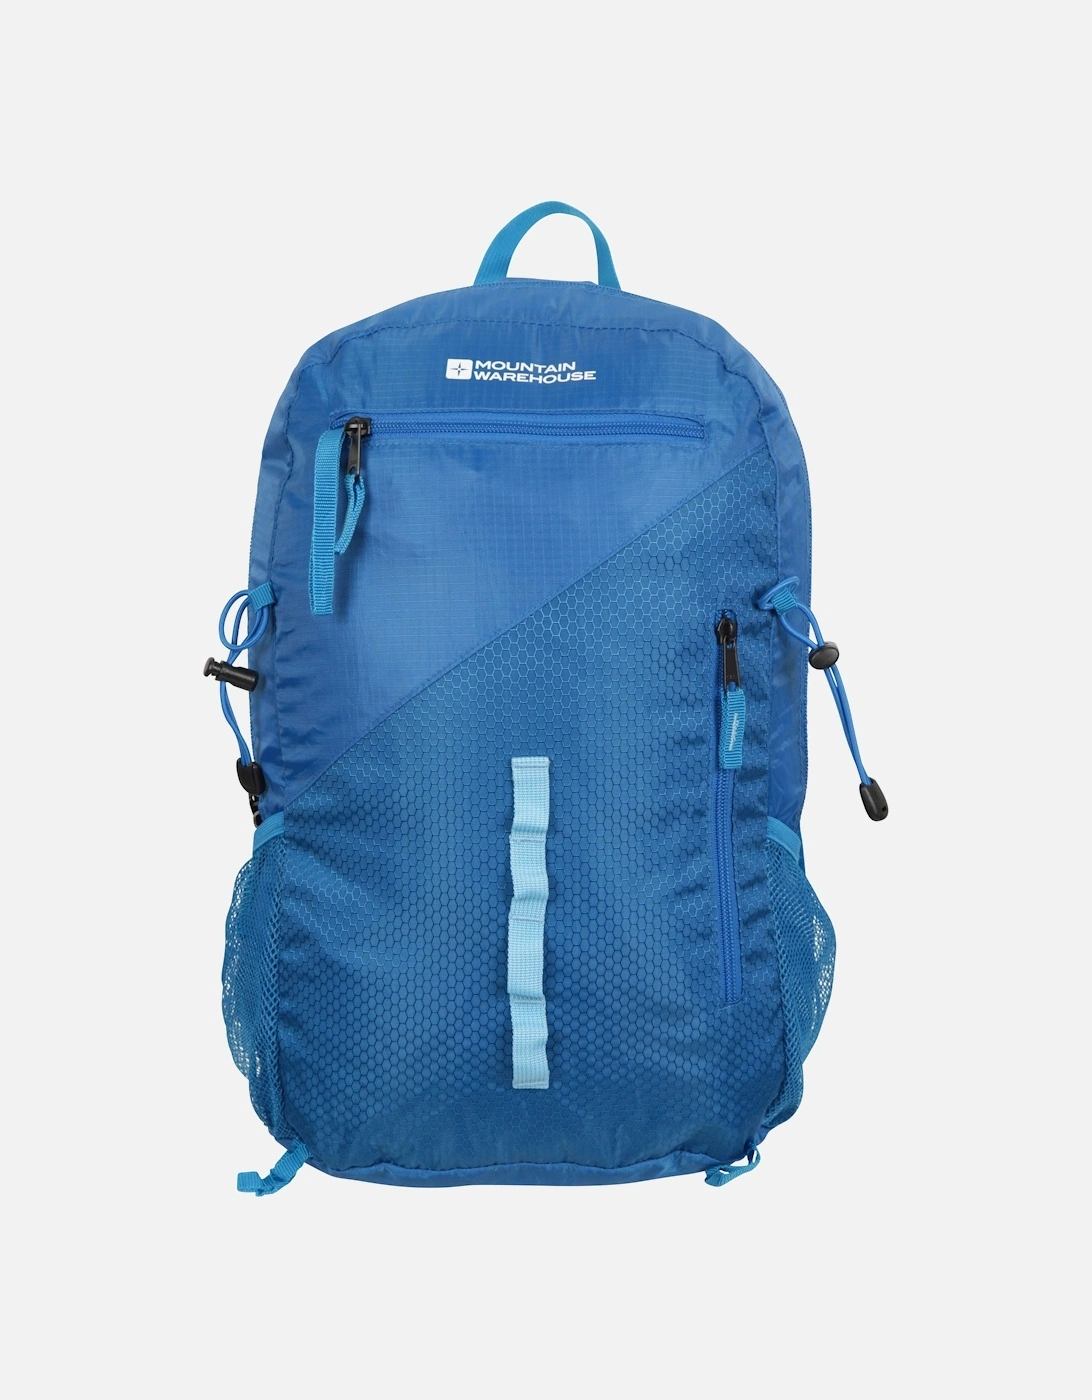 Malvern Packaway Backpack, 5 of 4